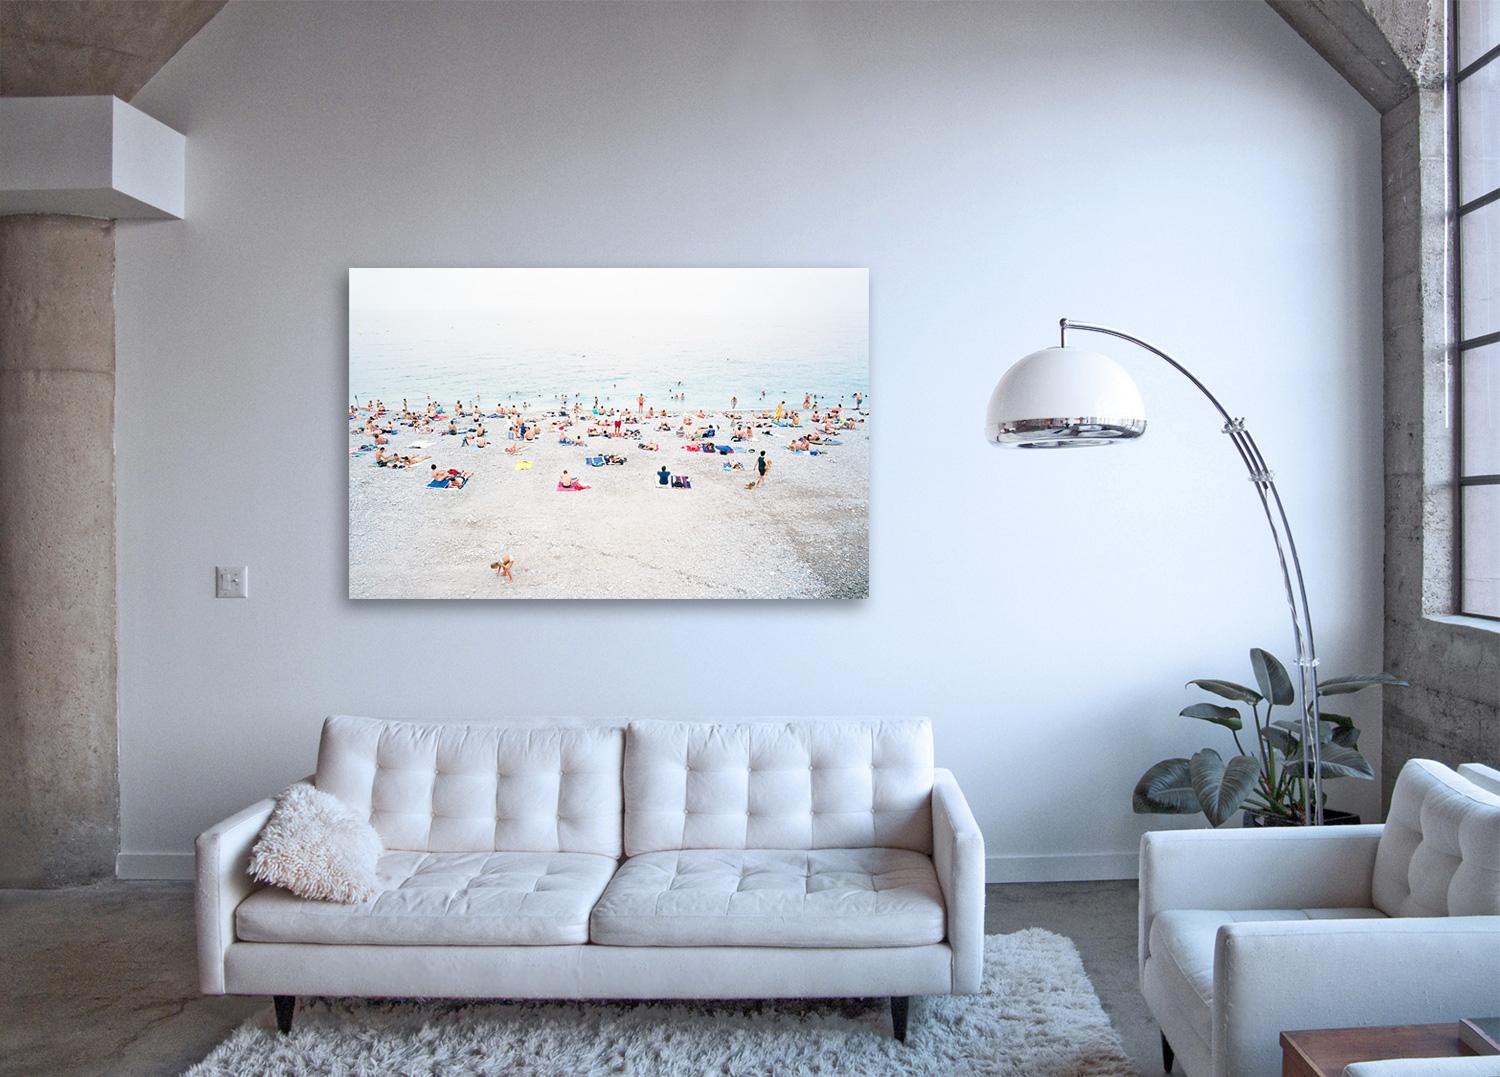 Nizza - photographie grand format d'une scène de plage d'été dans le sud de la France - Photograph de Frank Schott